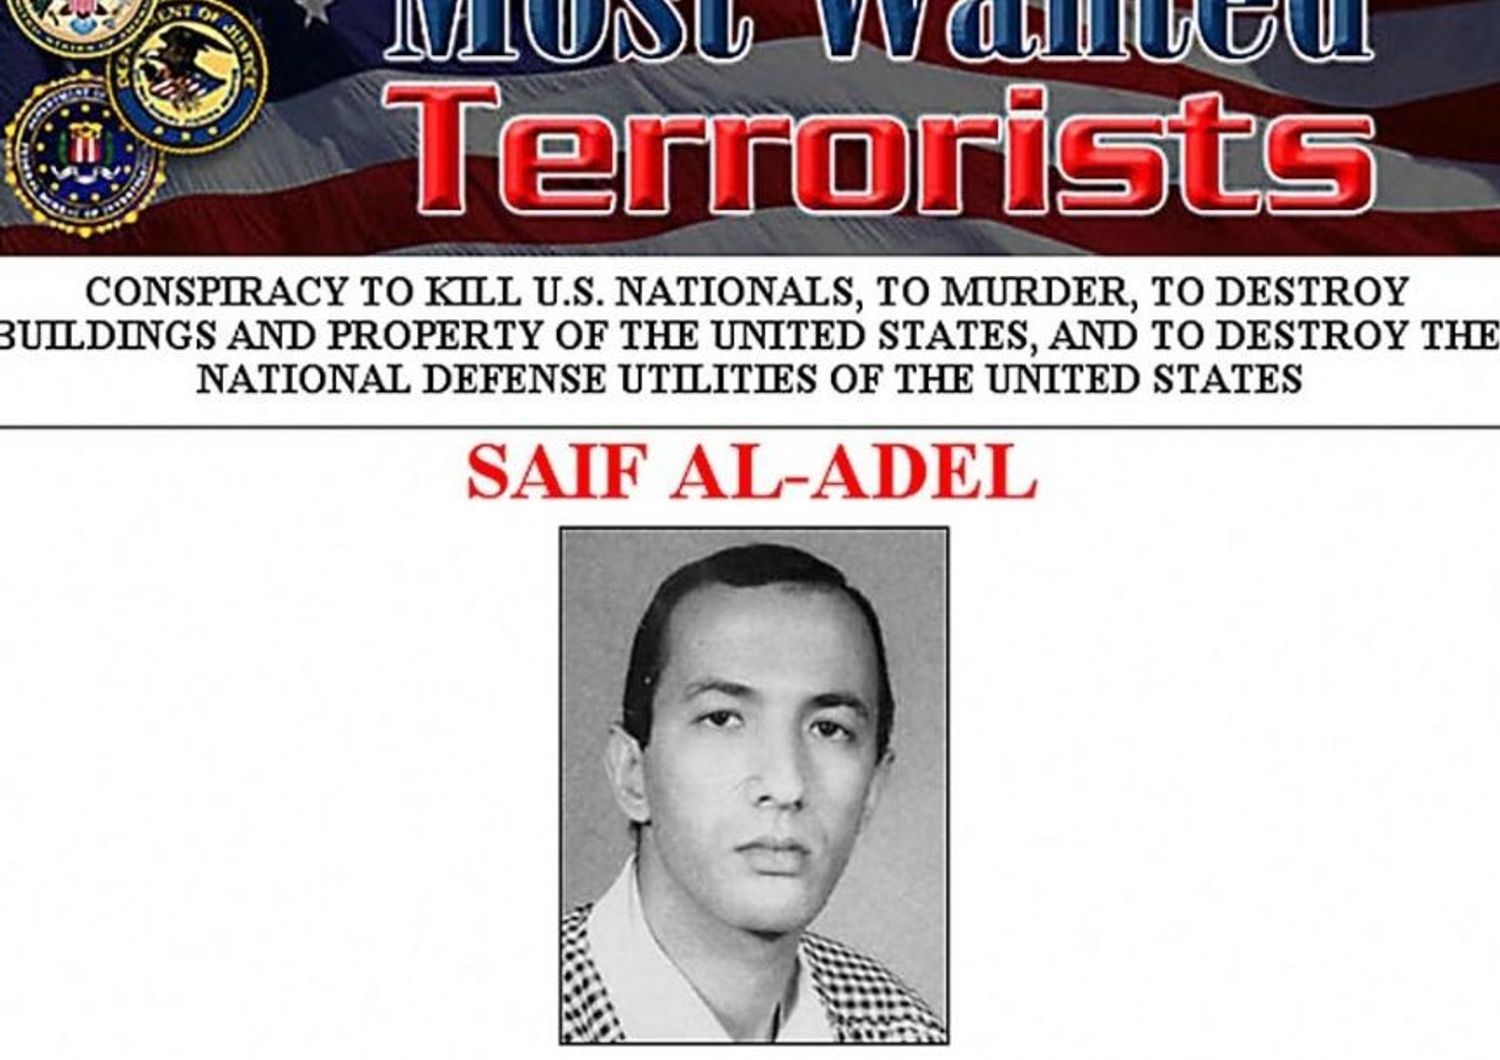 Saif Al Adel, nuovo capo di Al Qaeda